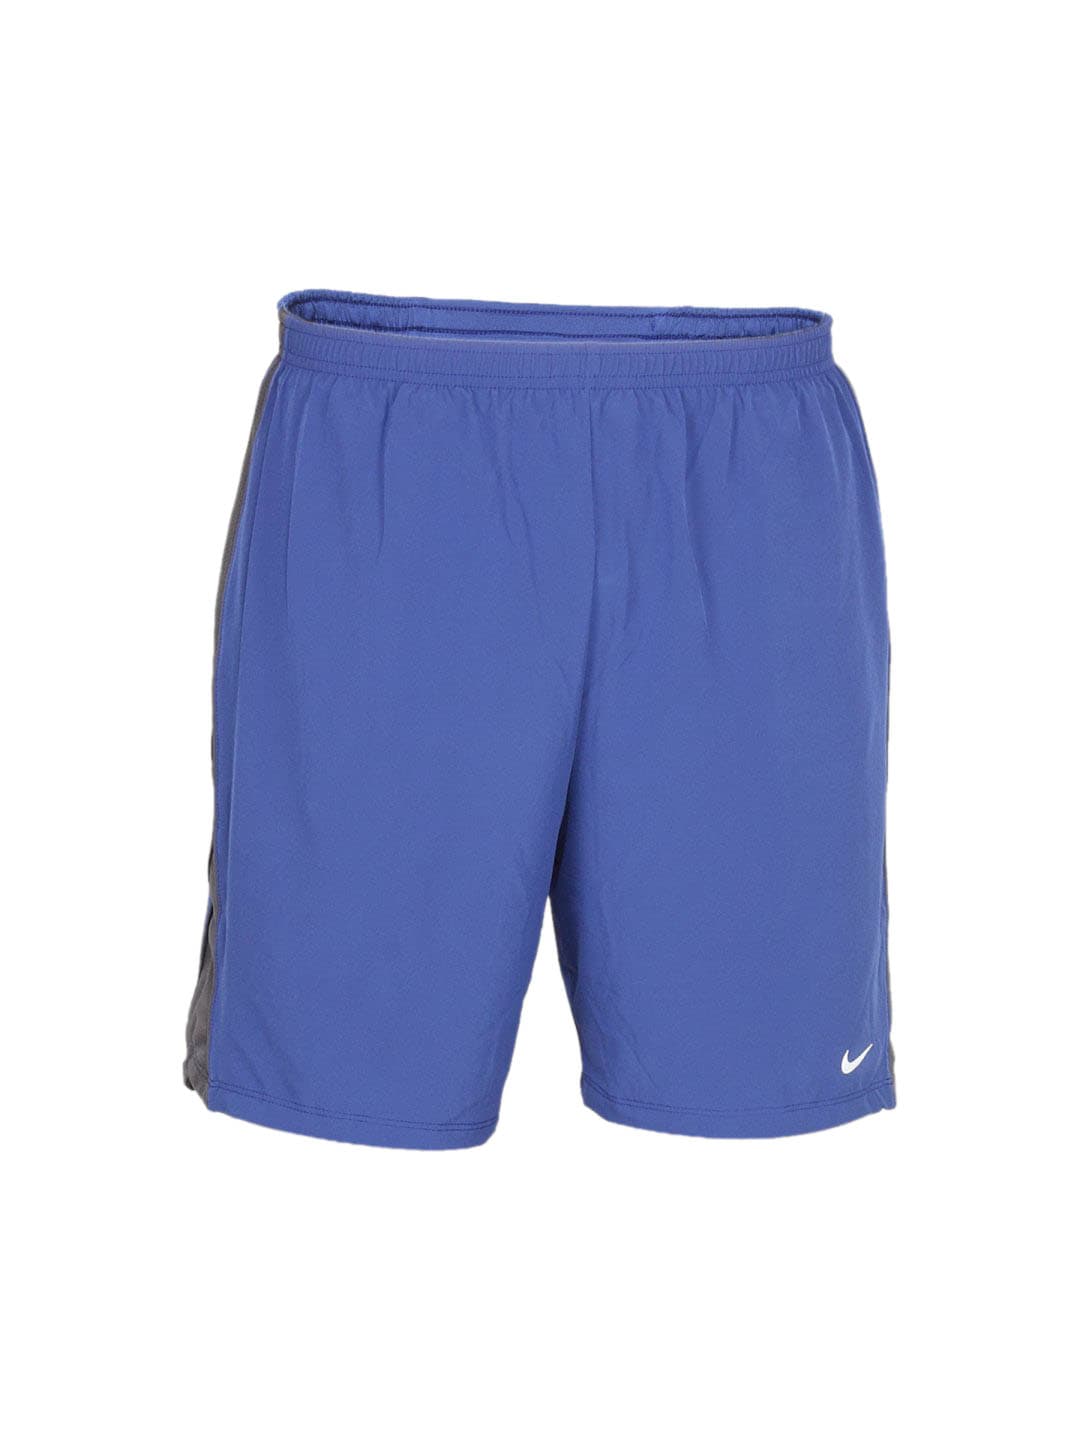 Nike Men's Blue Short